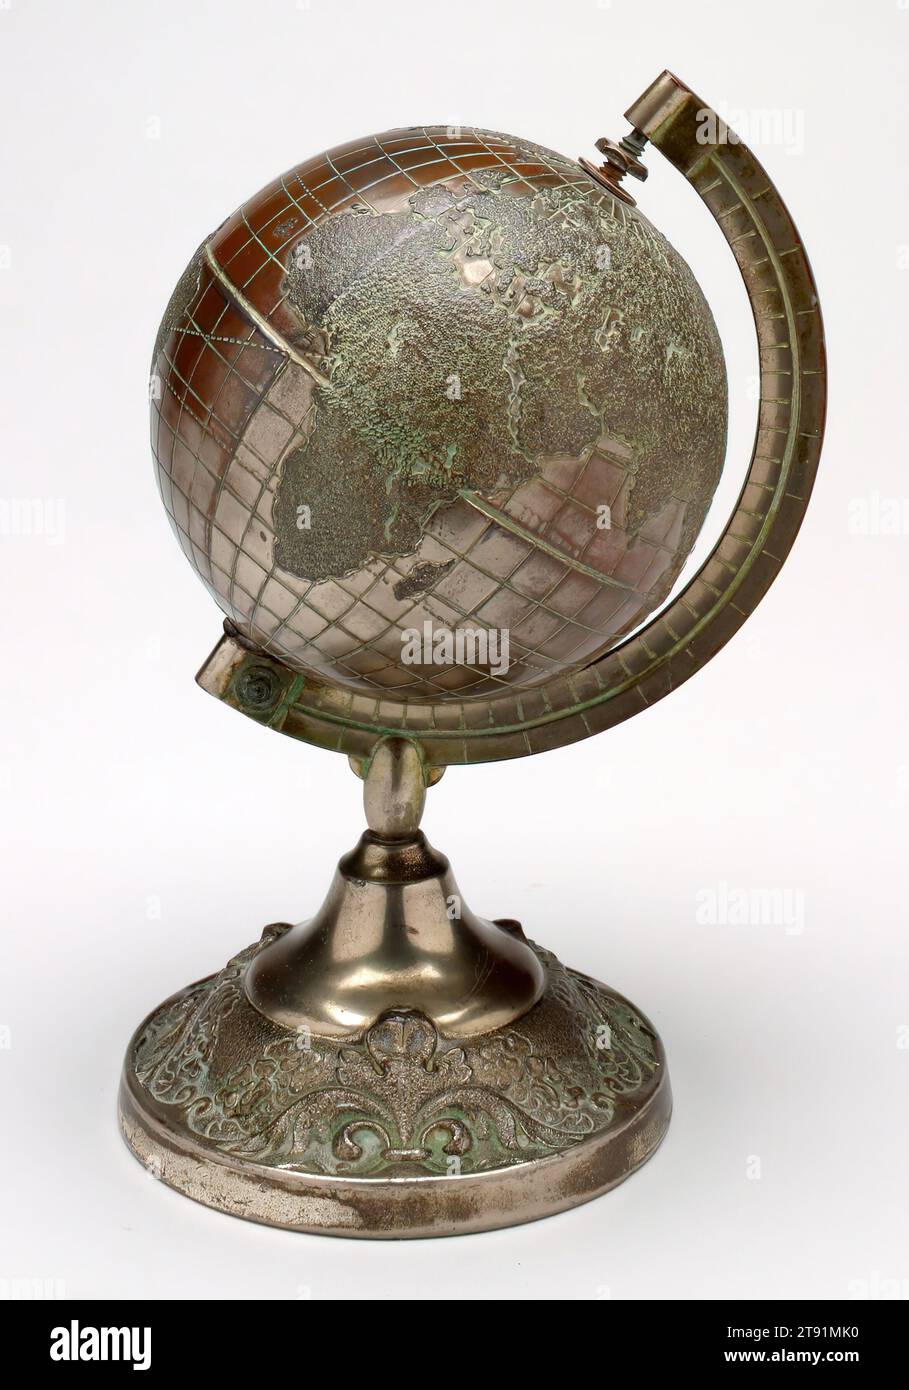 Globe sur la rive immobile d'Arc, 20e siècle, 7 1/4 x 4 7/8 x 4 15/16 po. (18,42 x 12,38 x 12,54 cm), laiton, États-Unis, 20e siècle Banque D'Images